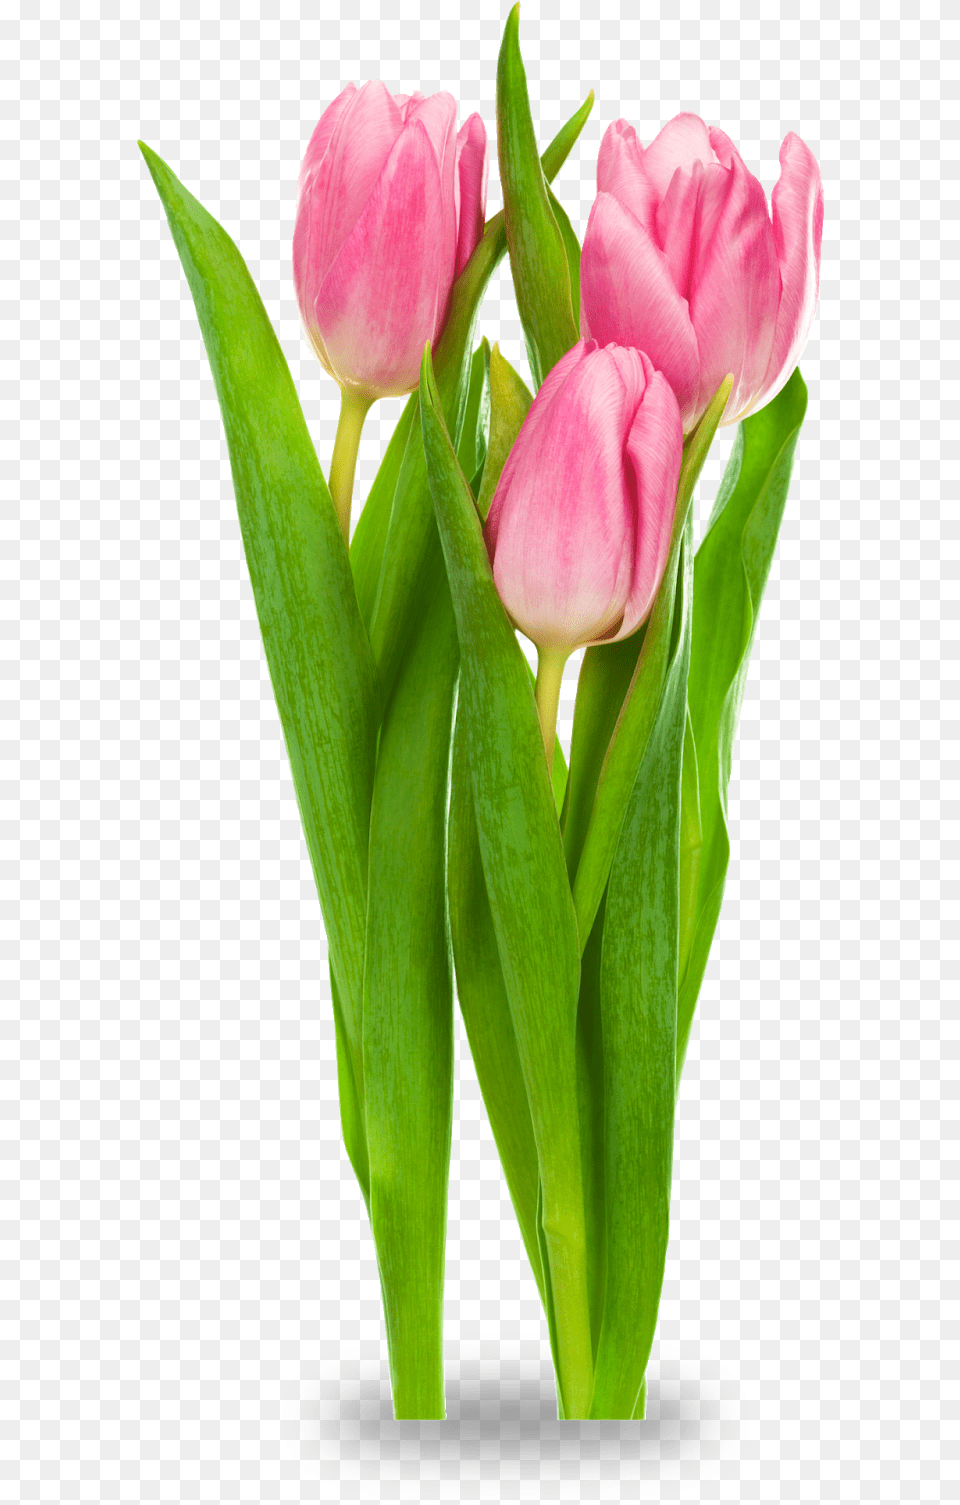 Clipart Resolution Cut Flowers Transparent Background, Flower, Plant, Tulip, Petal Png